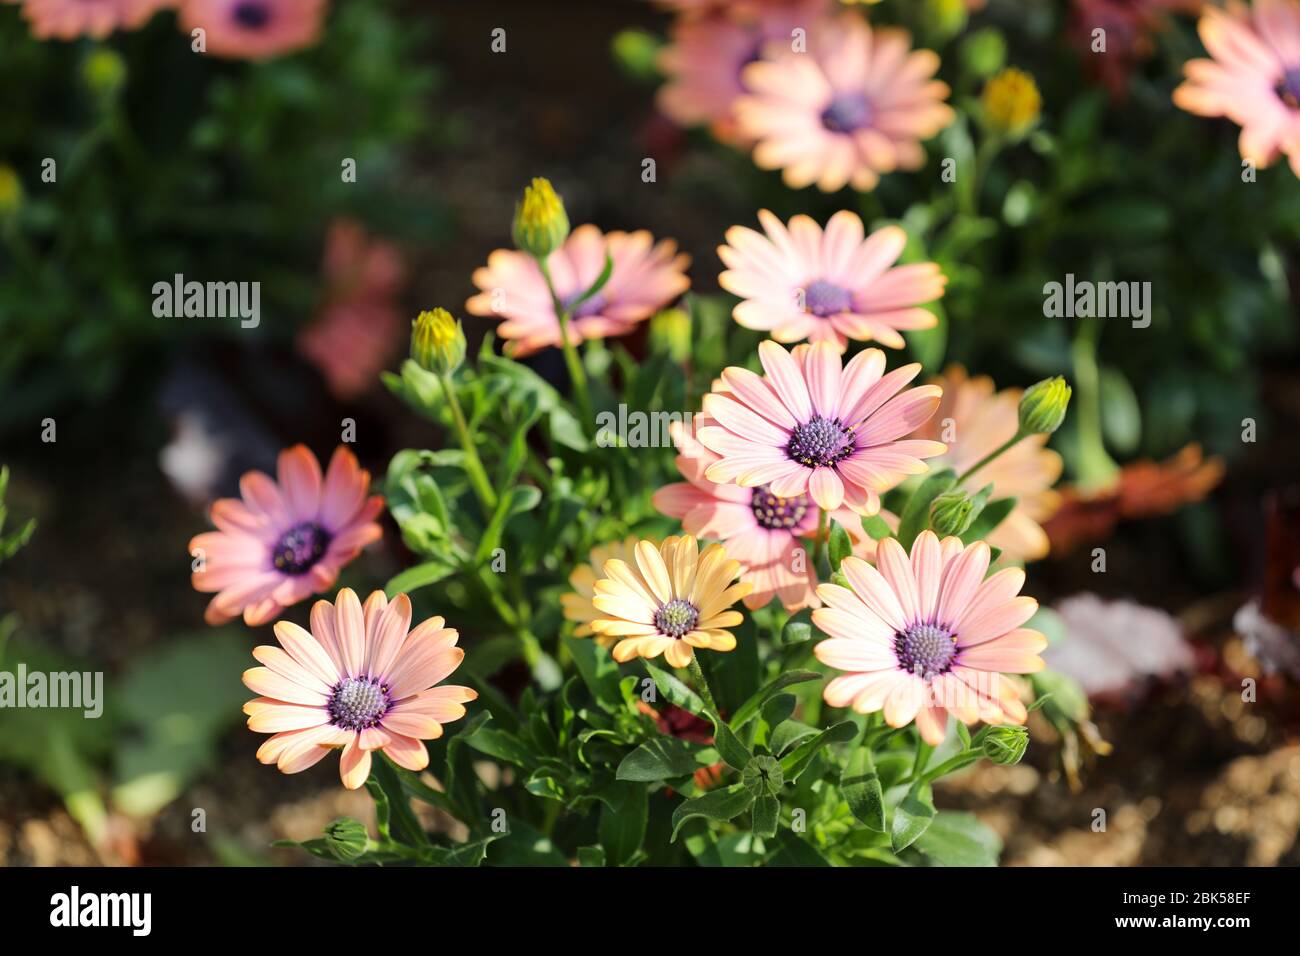 Beautiful pink daisy flowers Stock Photo